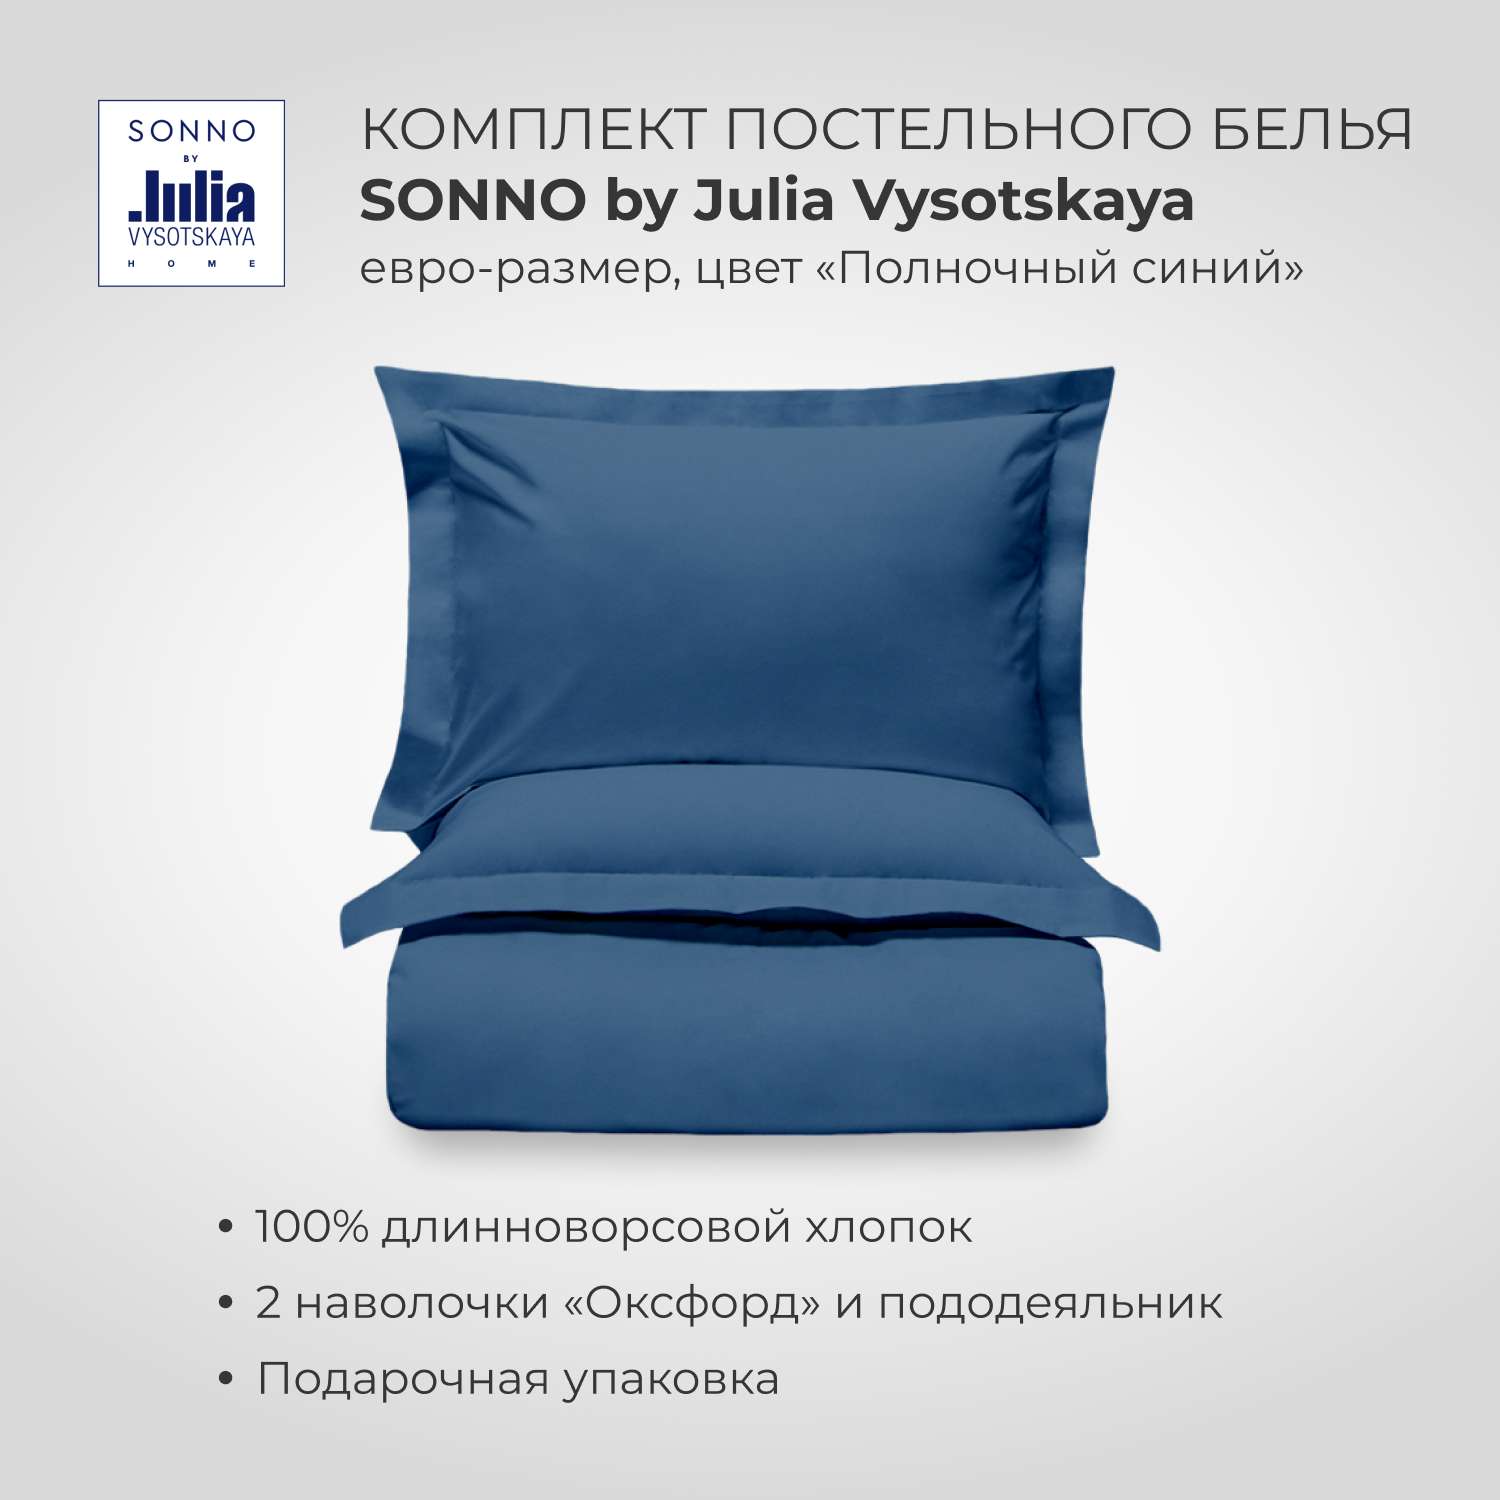 Комплект постельного белья SONNO by Julia Vysotskaya Евро-размер Цвет Полночный синий - фото 1